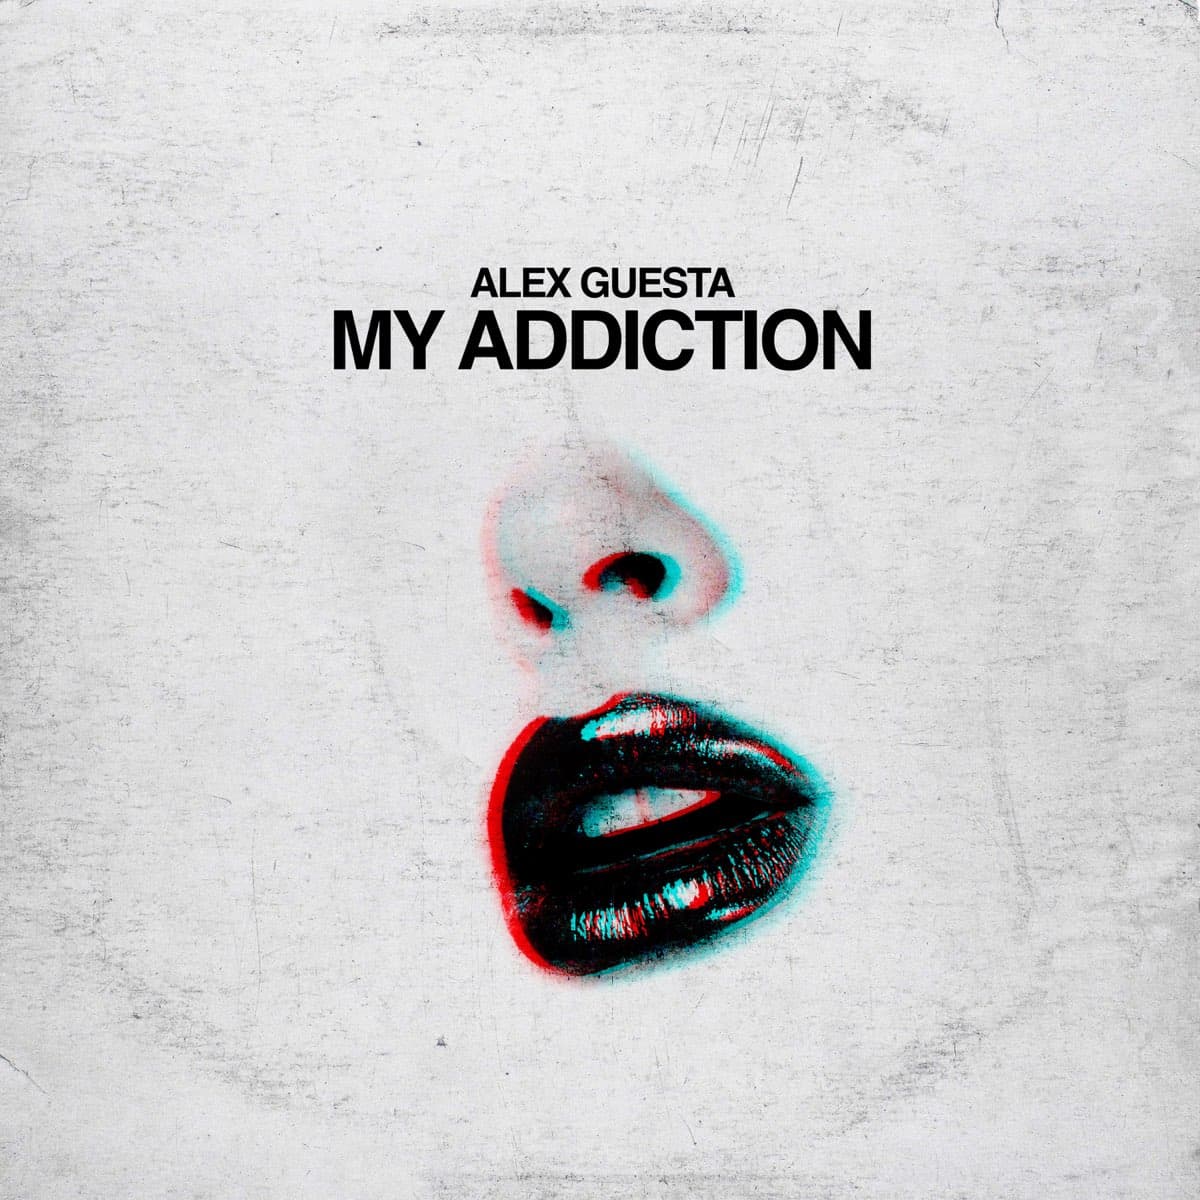 Рингтон My addiction (Alex Guesta)